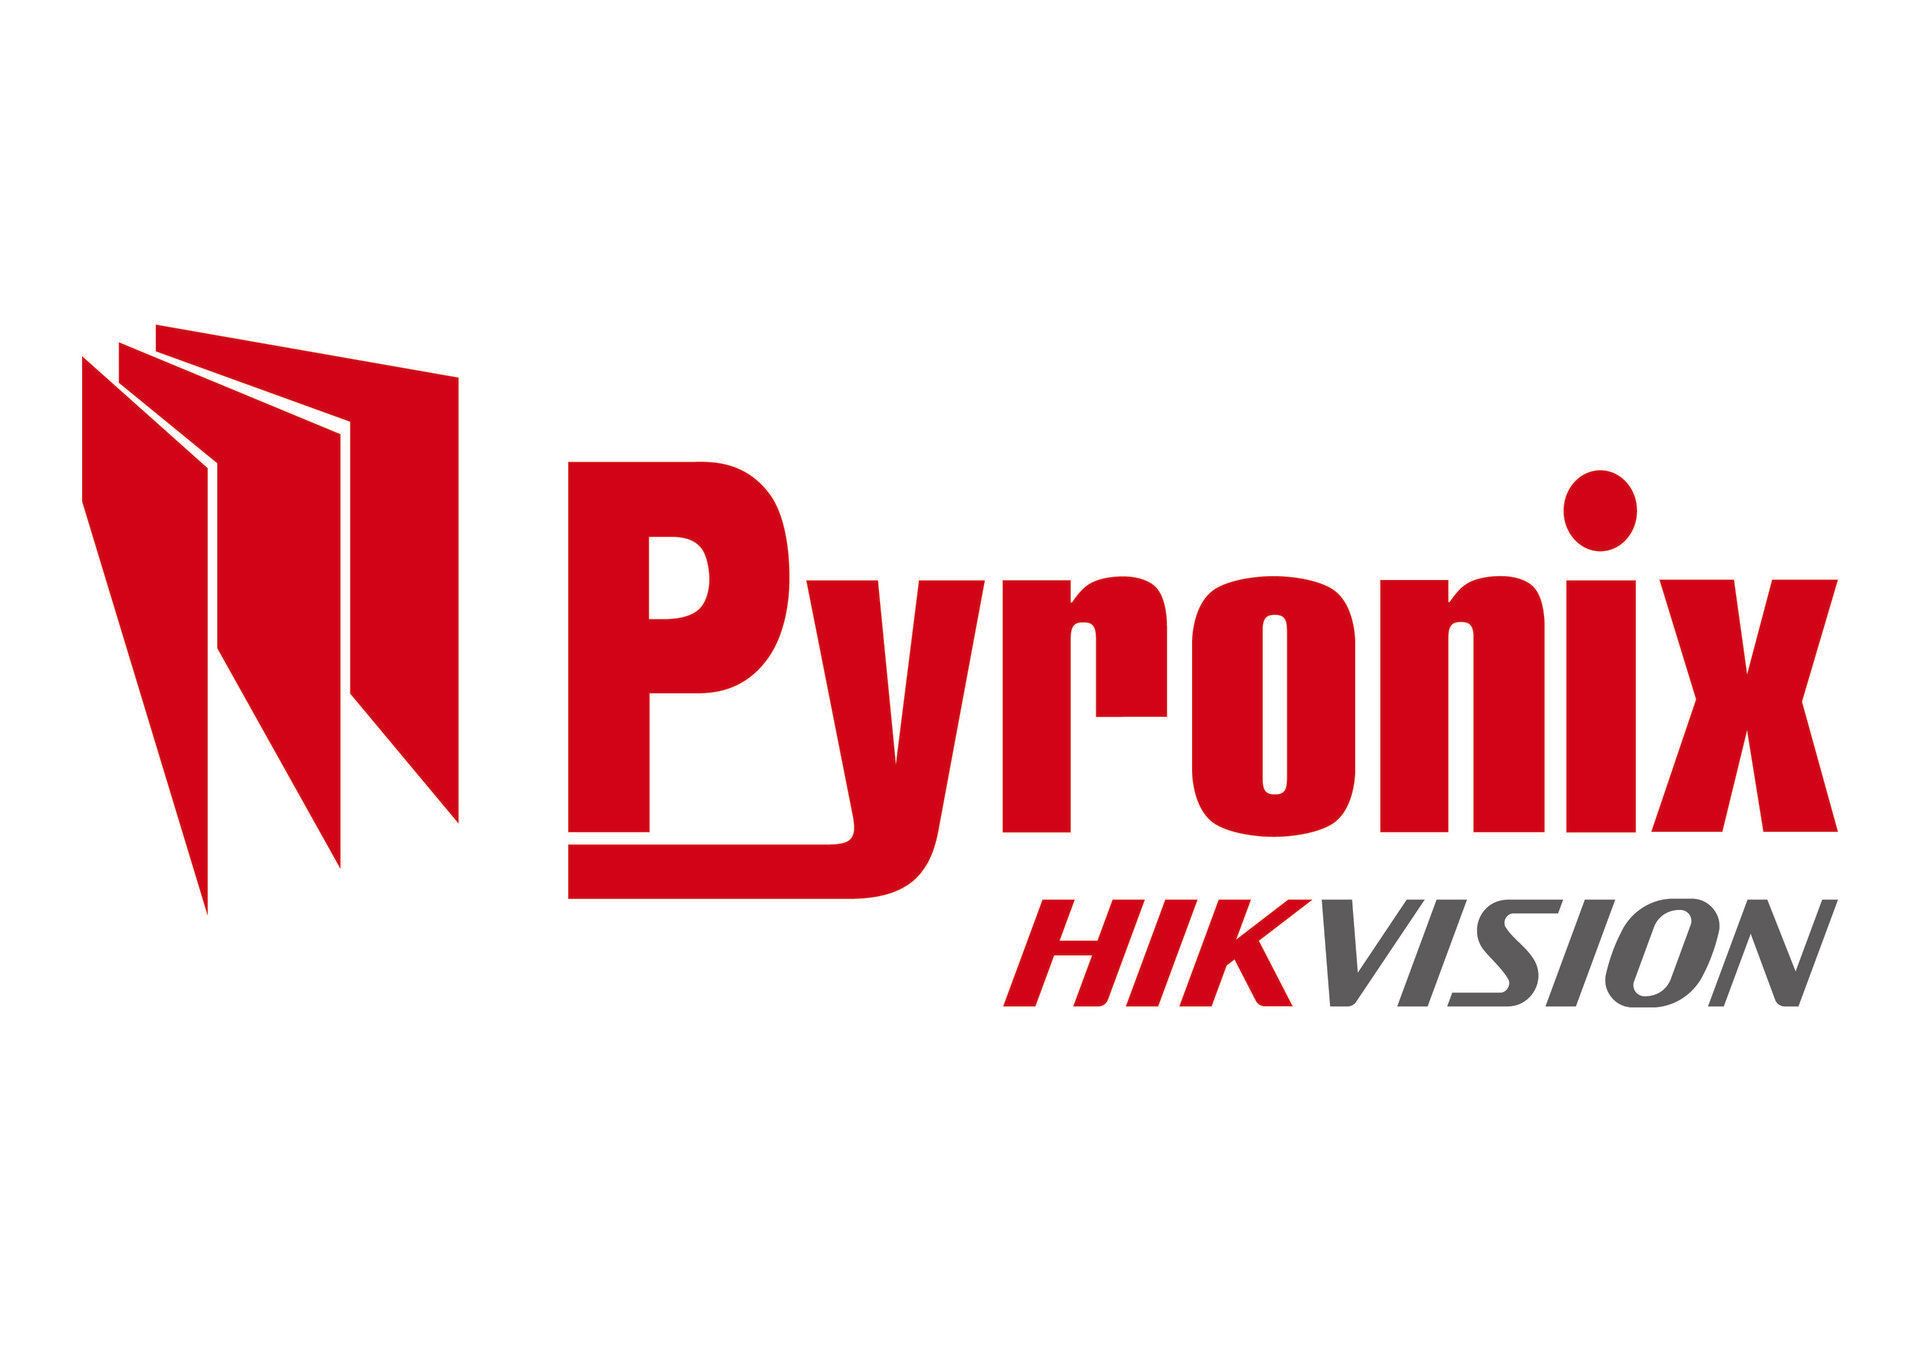 pyronix logo